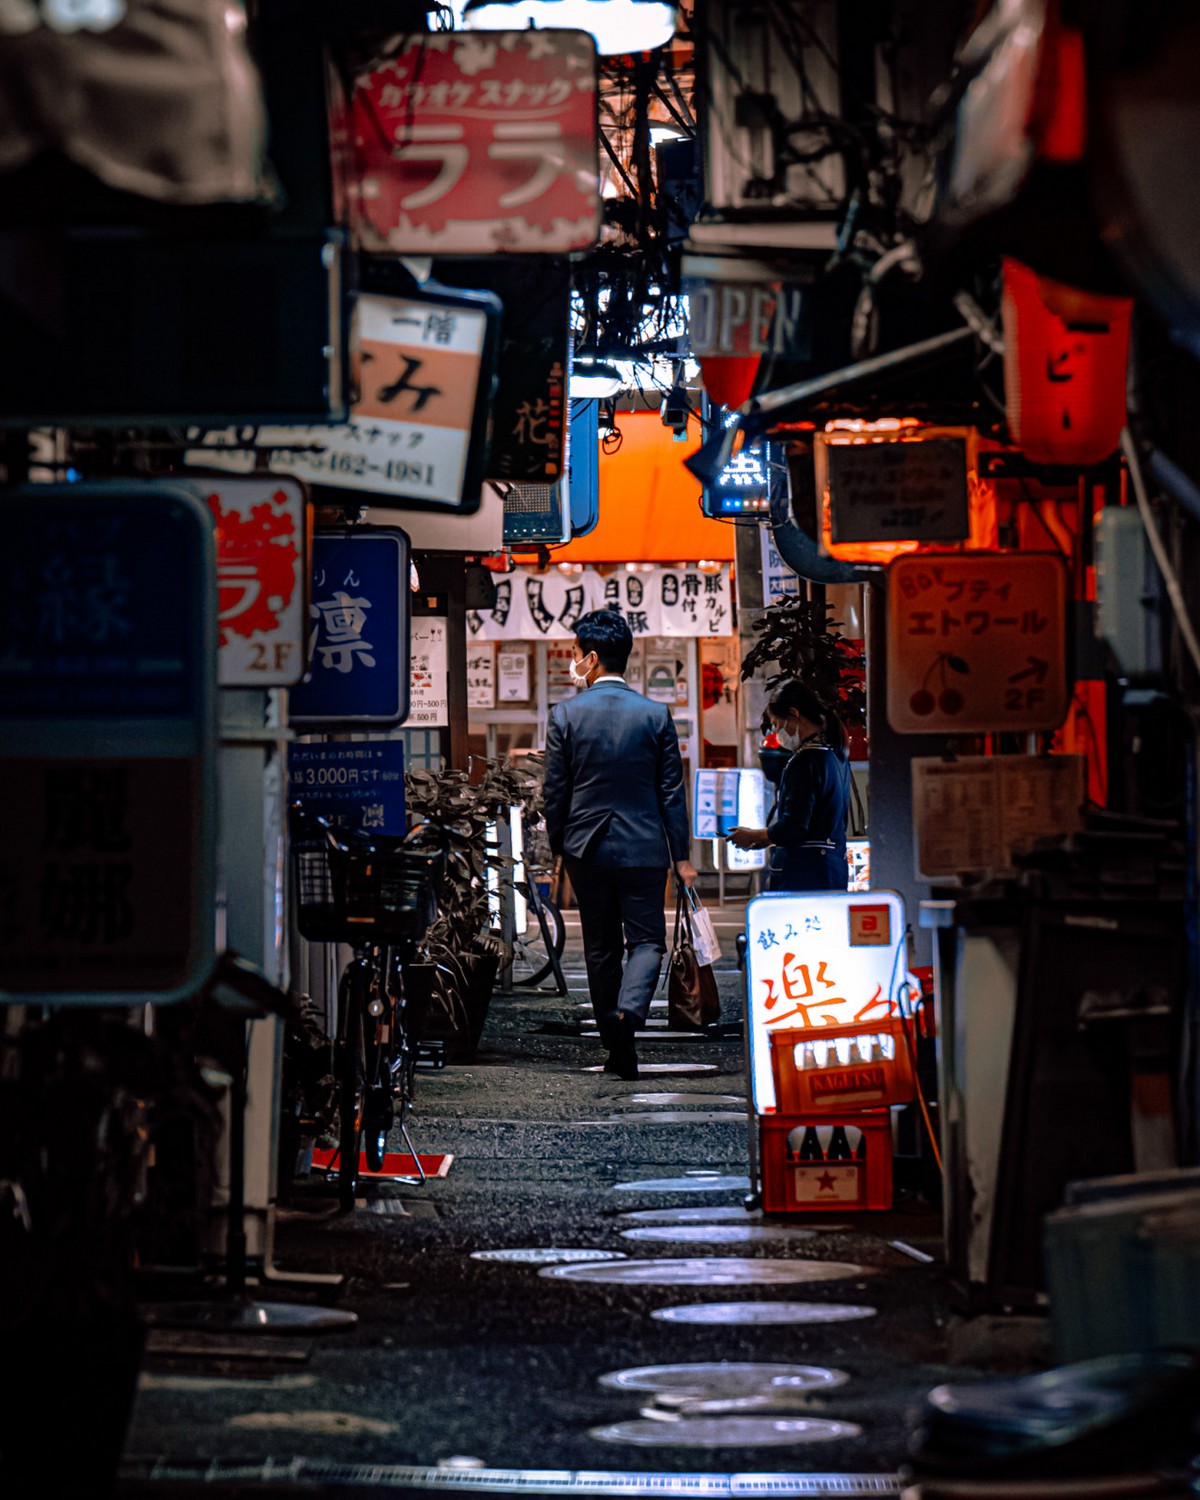 На улицах Токио города, Казуя, фотосъемку, Токио, Японский, площади, своими, аудиторией, делится, Instagram, языке, английском, ведёт, Юноша, Москвой, можно, размеру, сопоставить, интересными, плотность